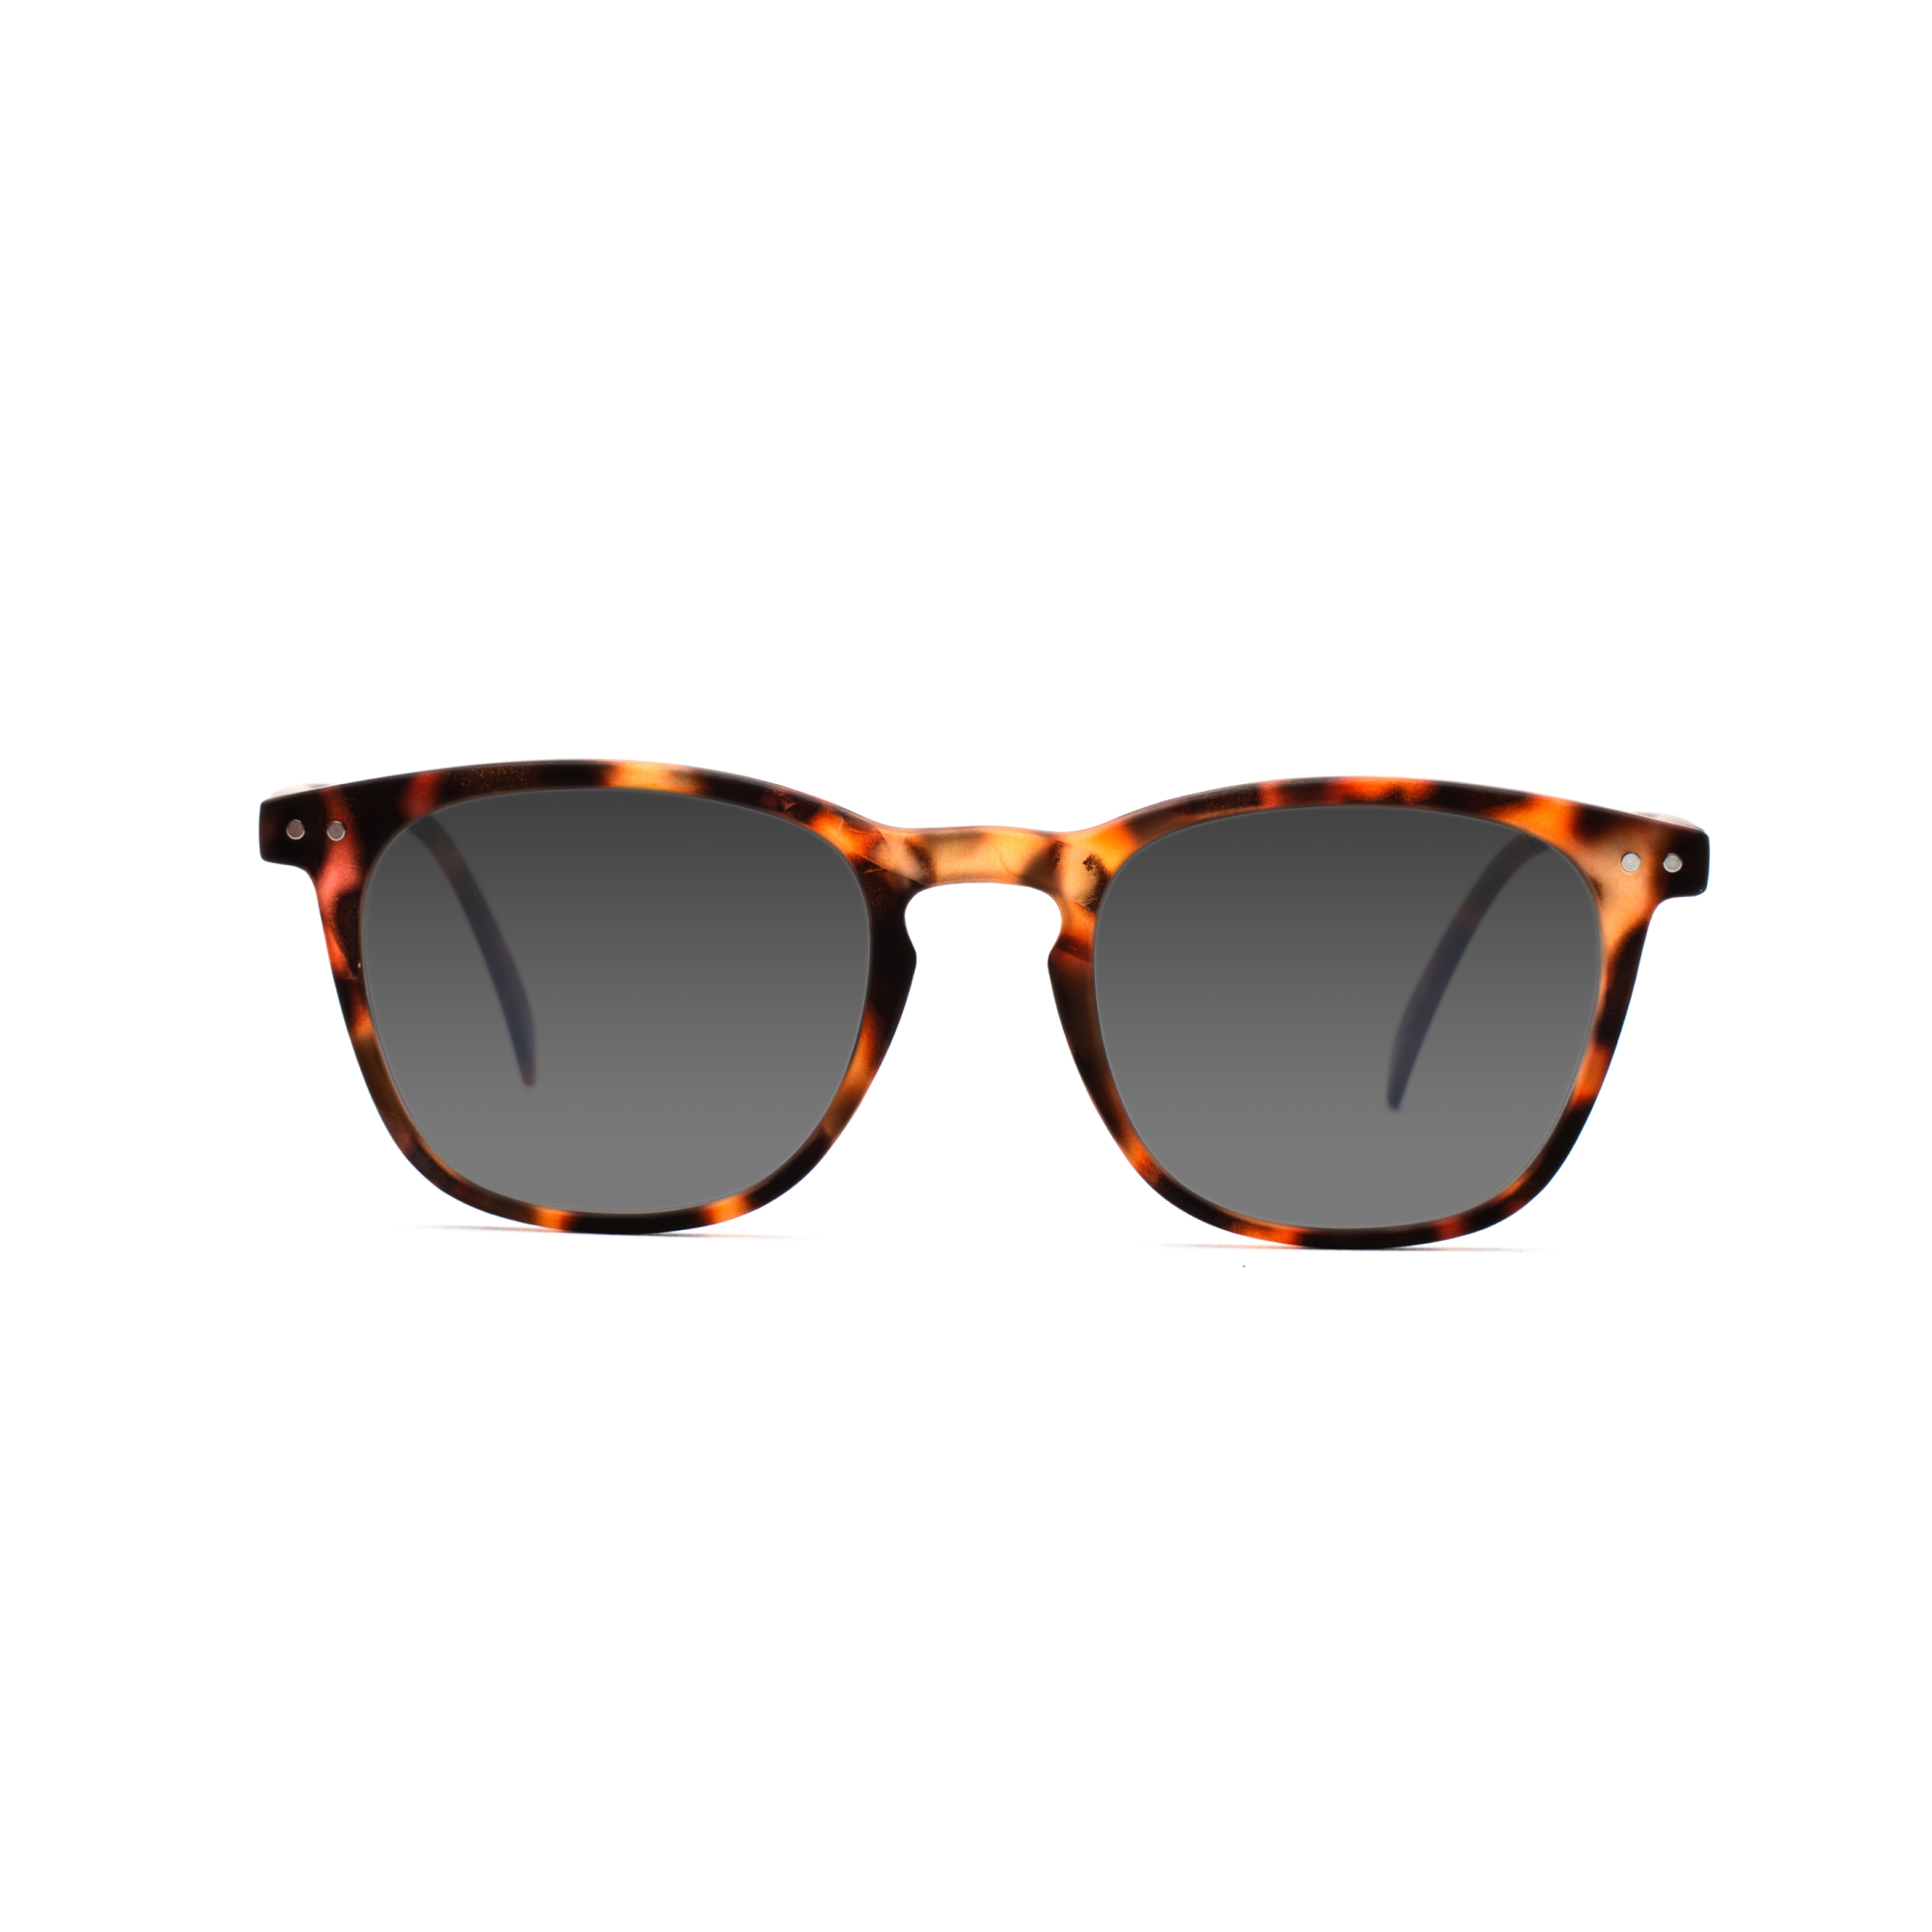 men's polarized sunglasses – William Polarised SUN m - Tortoise